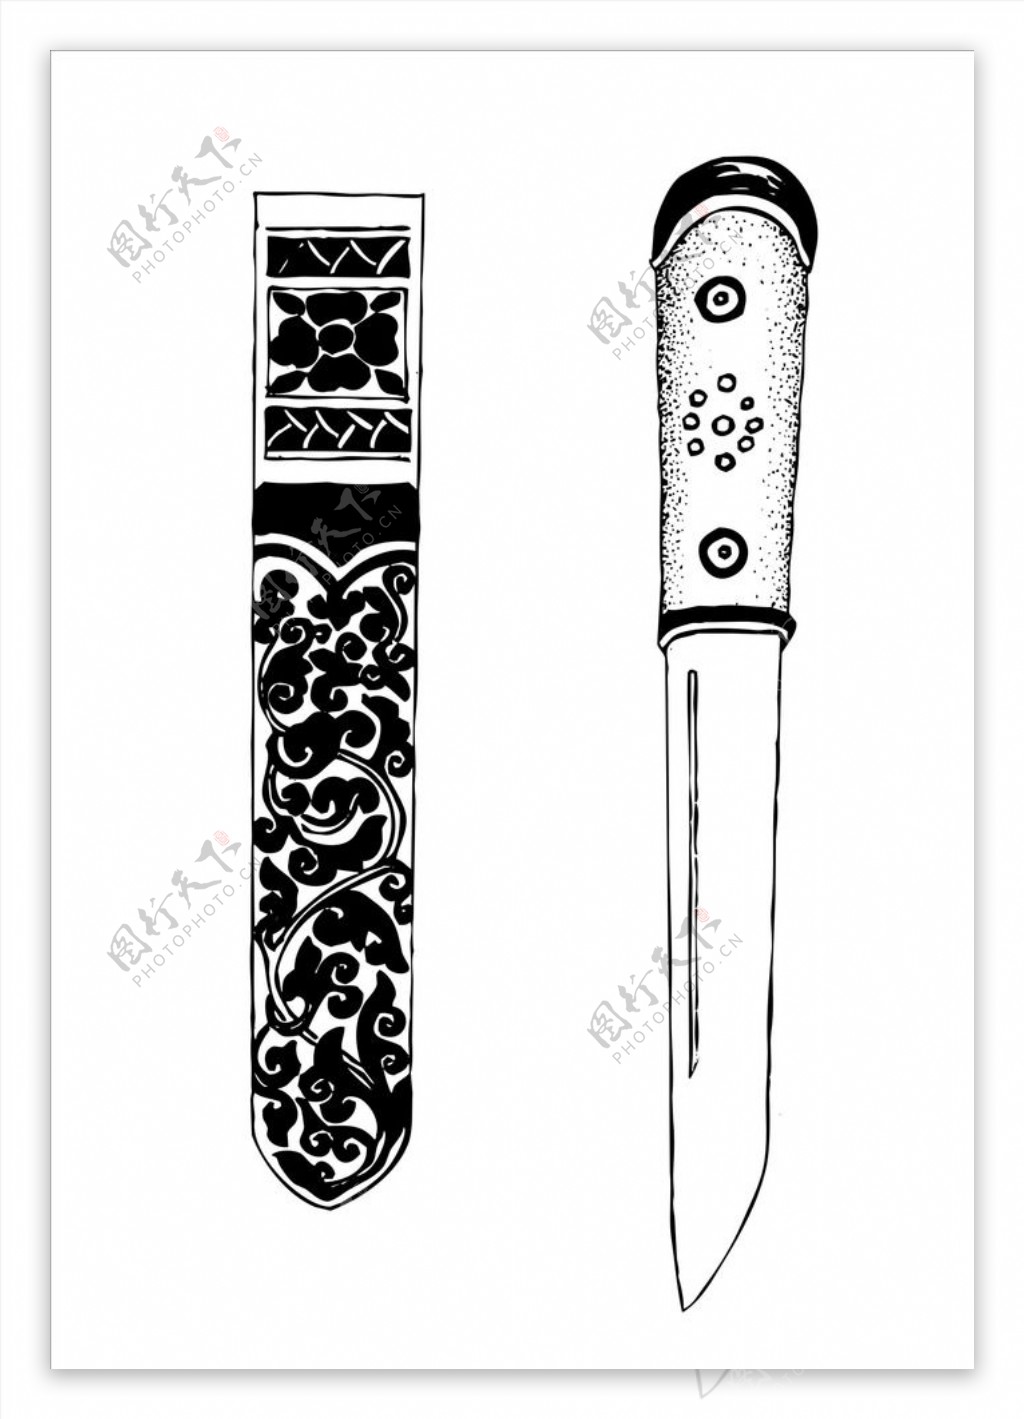 藏族刀具